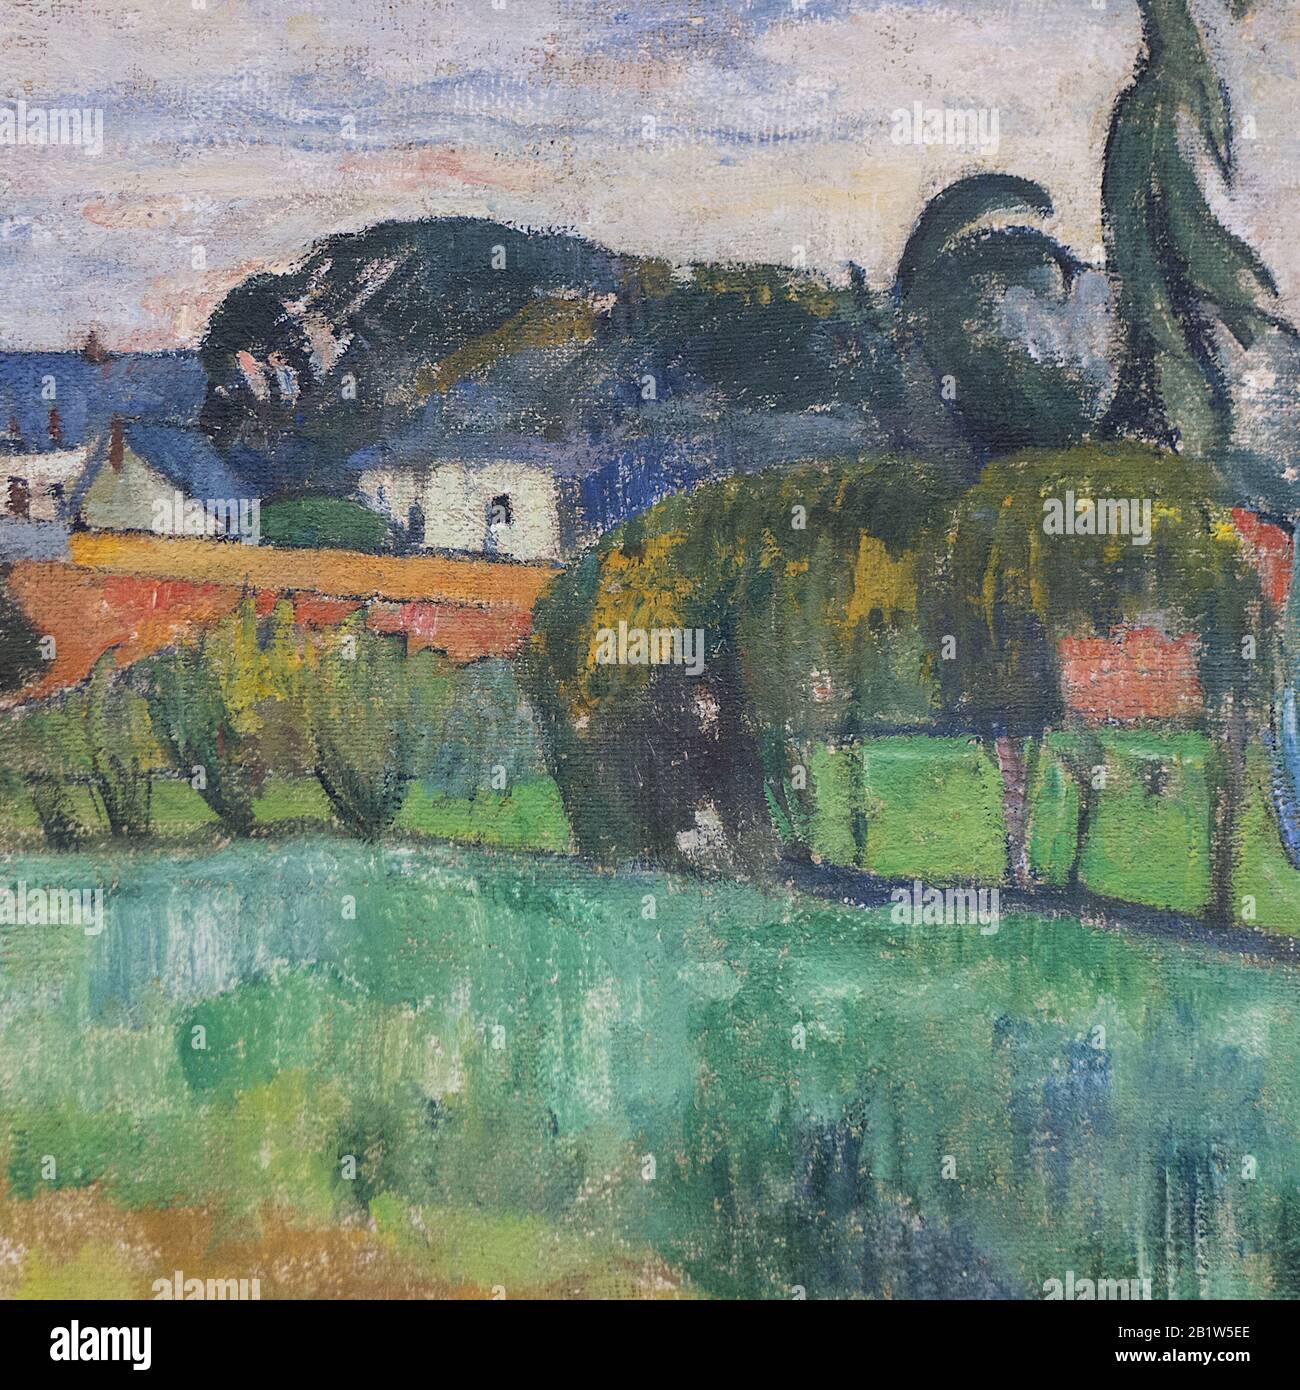 Paysage à Pouldu (Paysage du Pouldu) (1890) 19 ème siècle Peinture de Paul Gauguin - Très haute résolution et image de qualité Banque D'Images